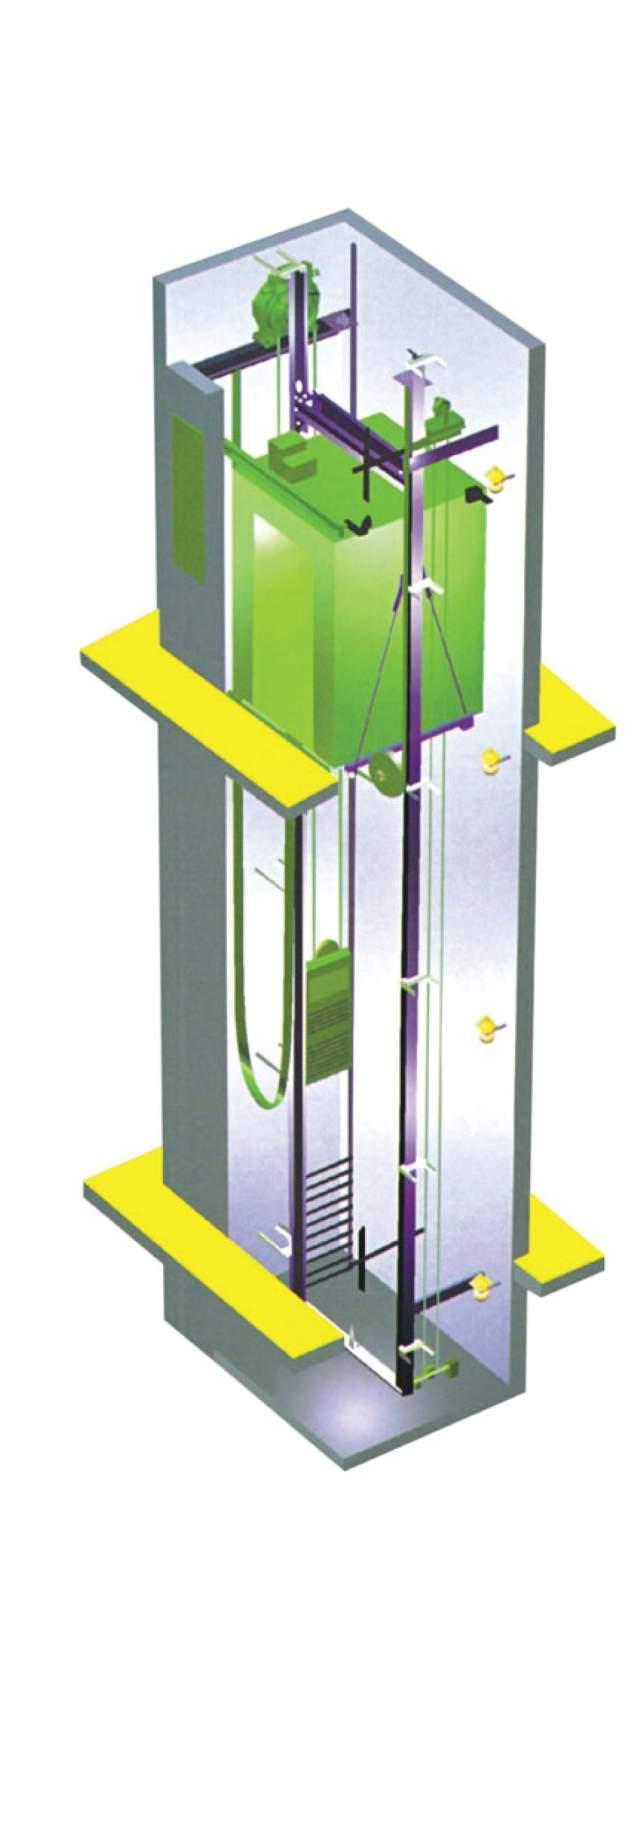 MAKİNA DAİRESİZ ASANSÖRLER Makine Dairesiz Asansör Tahrik Sistemi (Dişlisiz Senkron Motor) Geleneksel şanzomanlı makineler ile karşılaştırıldığında kompakt küçük bir yapıya sahip olması nedeni ile